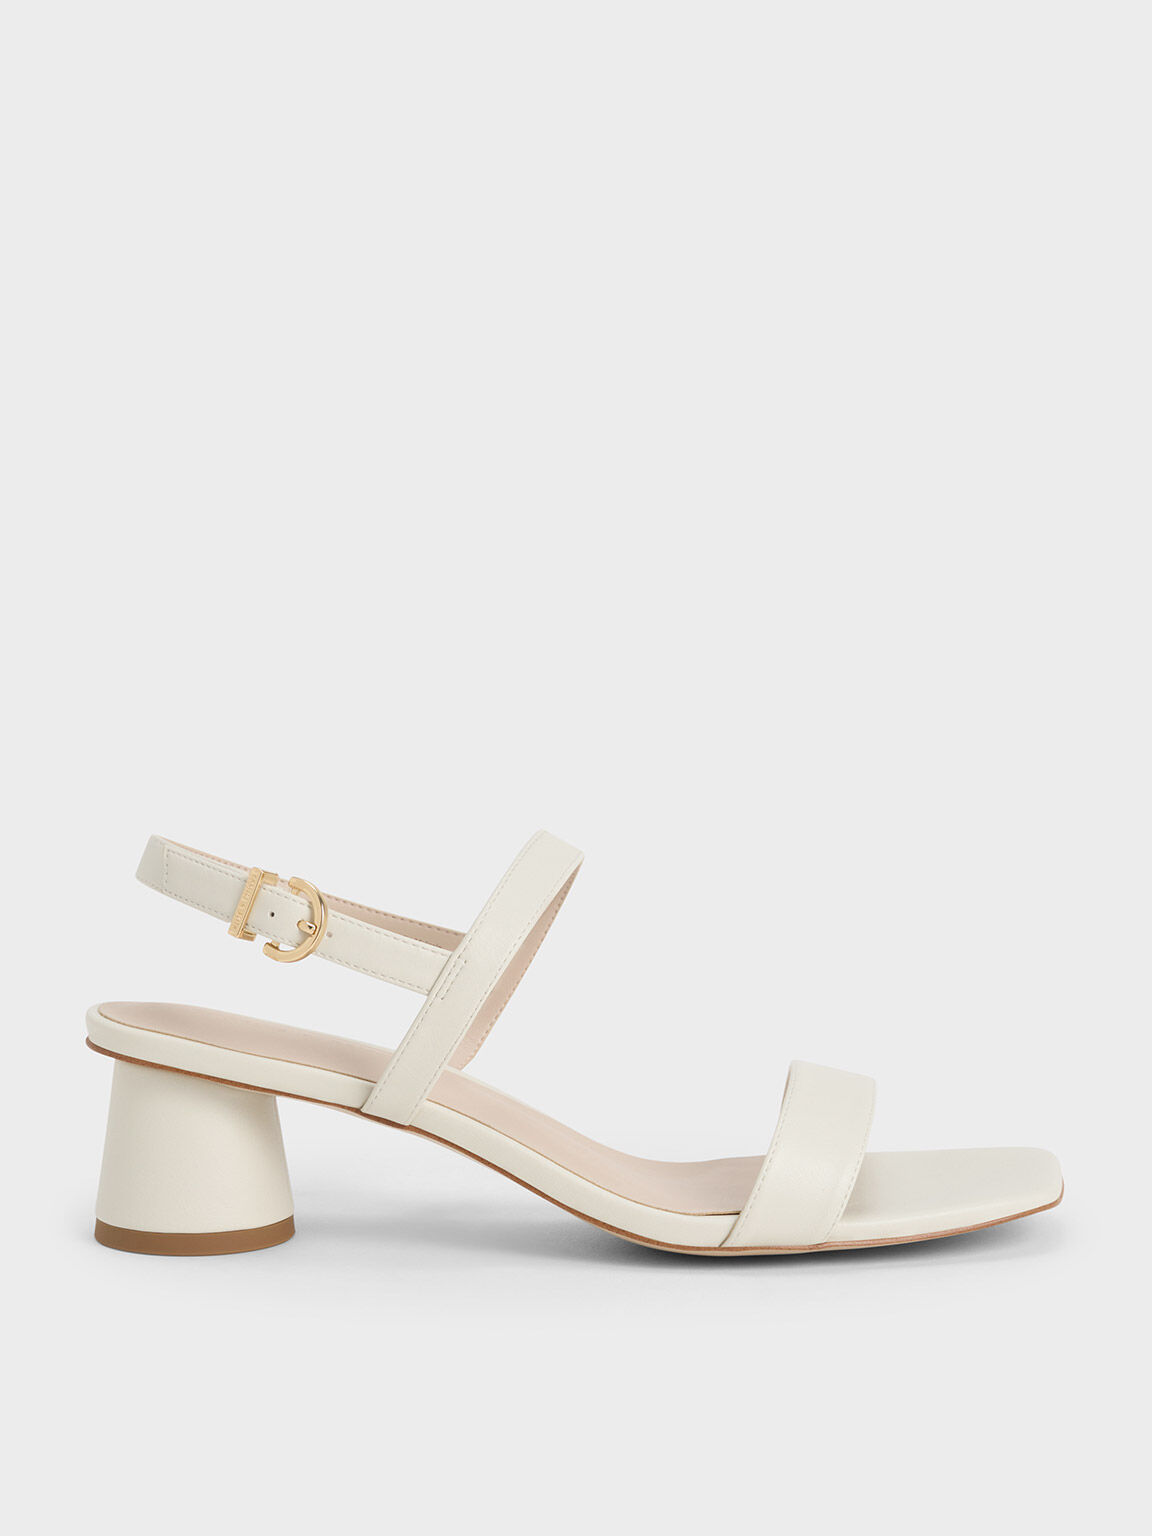 Floral Lucite Heel Sandals - ShopperBoard